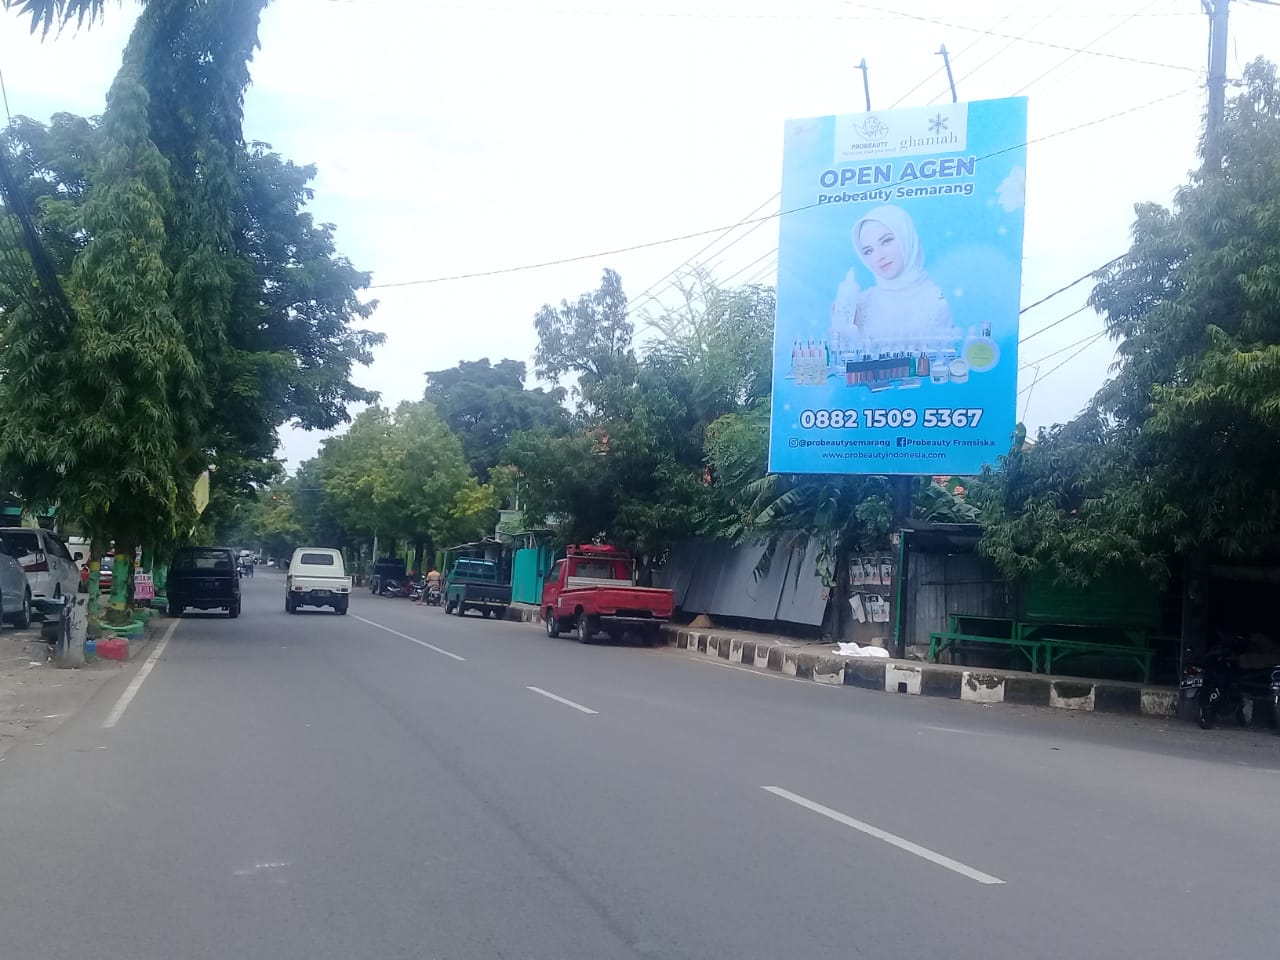 Manfaat Pengunaan Billboard Semarang Sebagai Media Branding Perusahaan